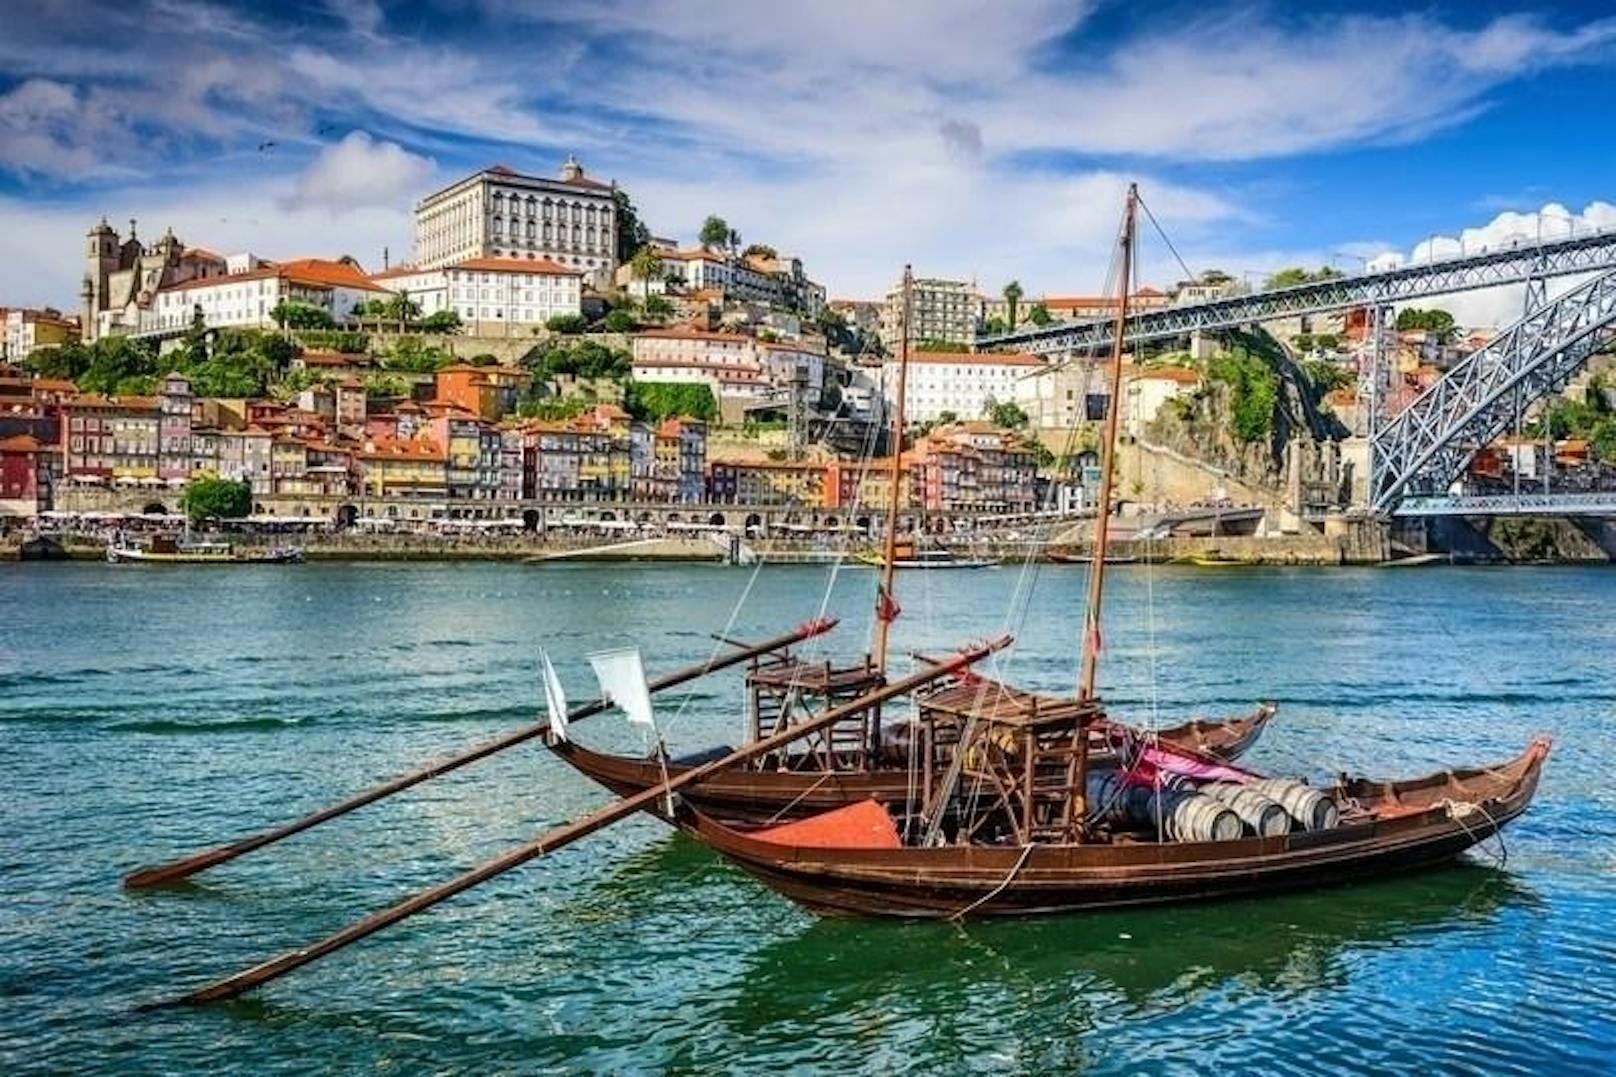 <b>Waage - Porto, Portugal</b>
All die Anstrengungen und Mühen der letzten Jahre werden sich für alle Waage-Geborenen 2018 endlich lohnen: In jedem möglichen Lebensbereich könnt ihr euch im kommenden Jahr über positive Überraschungen freuen und eure Lebensgeister wieder aufleben lassen. Auch völlig neue Herausforderungen werdet ihr meistern, wenngleich stets mit einem gewissen Hauch Melancholie, ganz im Sinne eurer ausbalancierten Art - und auch passend zur Stadt, in die euch die Sterne 2018 schicken: Porto in Portugal, wo euch fabelhaftes Essen, perfektes Wetter und Kreativität ohne Ende erwarten, angefeuert von einem gewissen, dem Ort eigenen, Wehmut. Lasst euch von Porto und seinem einzigartigen Charme in den Bann ziehen!